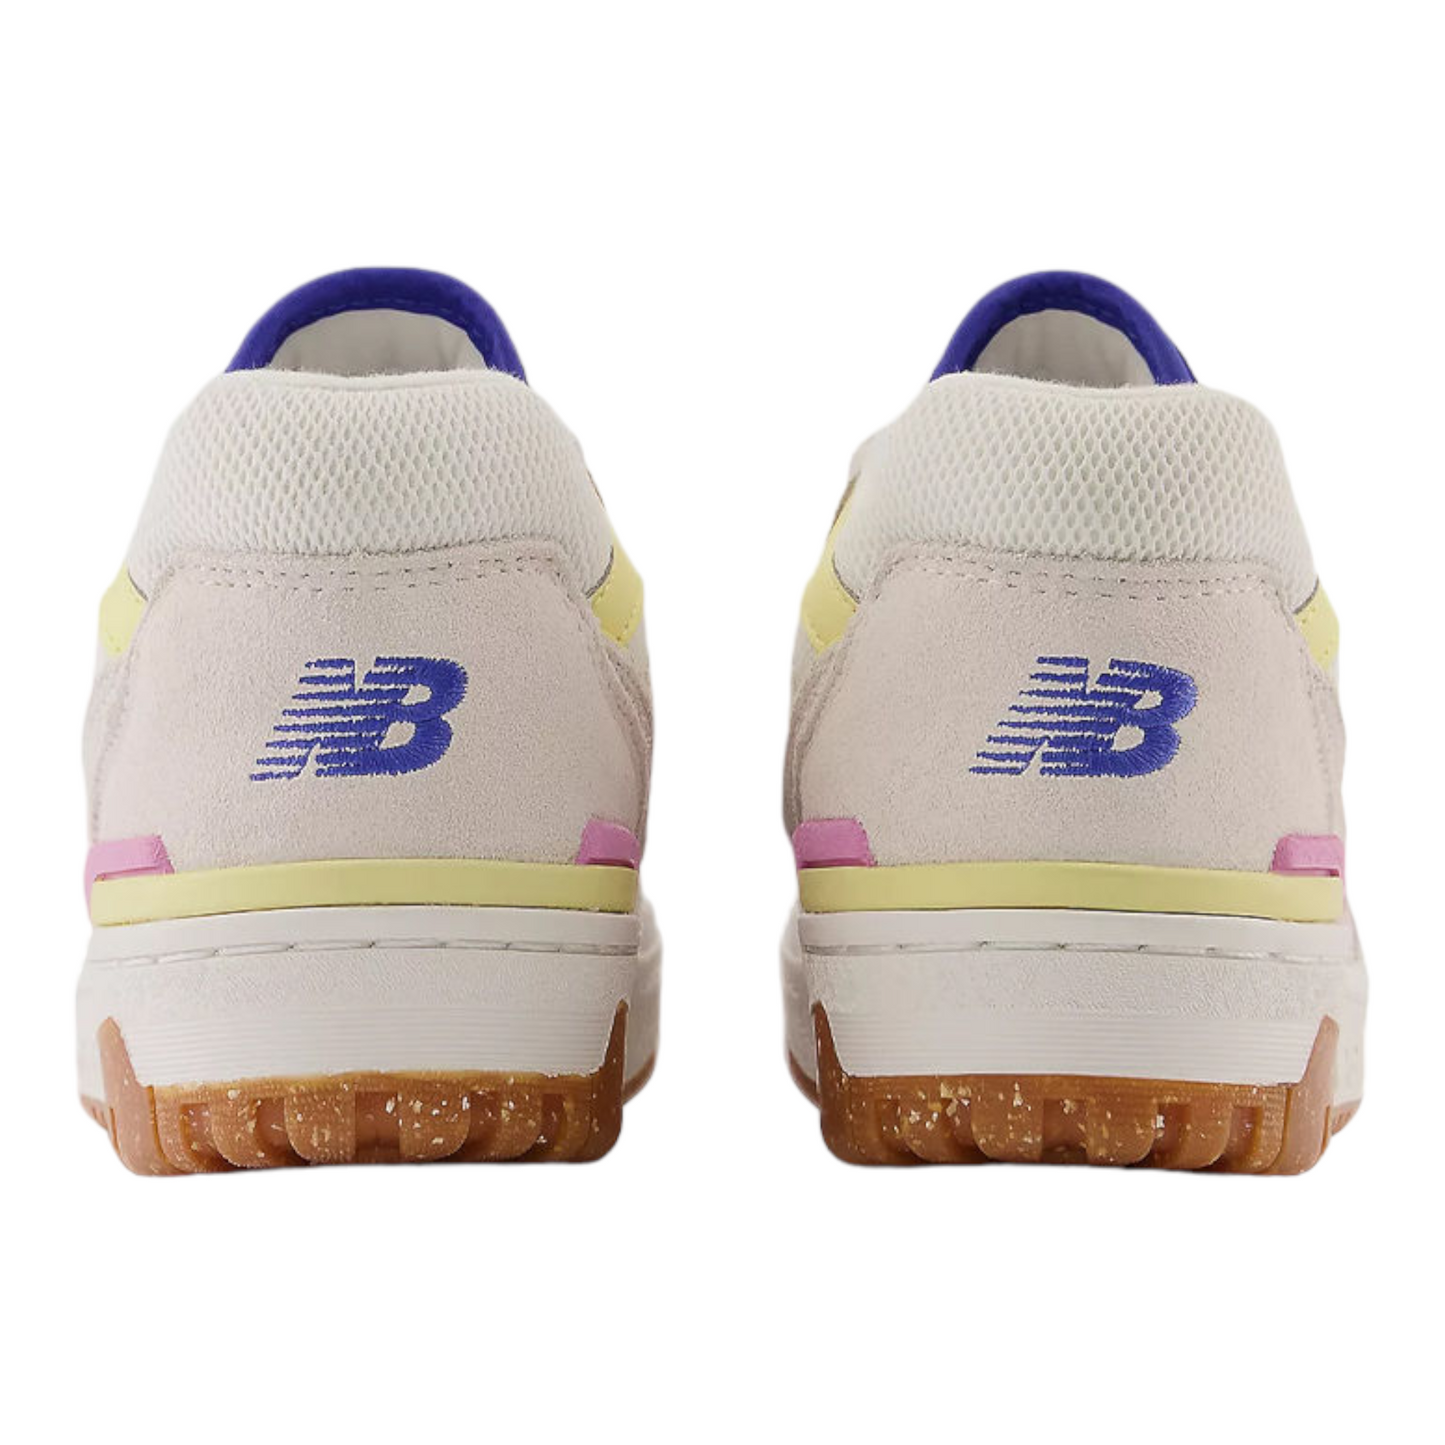 New Balance 550 BB550DB white blu yellow pink